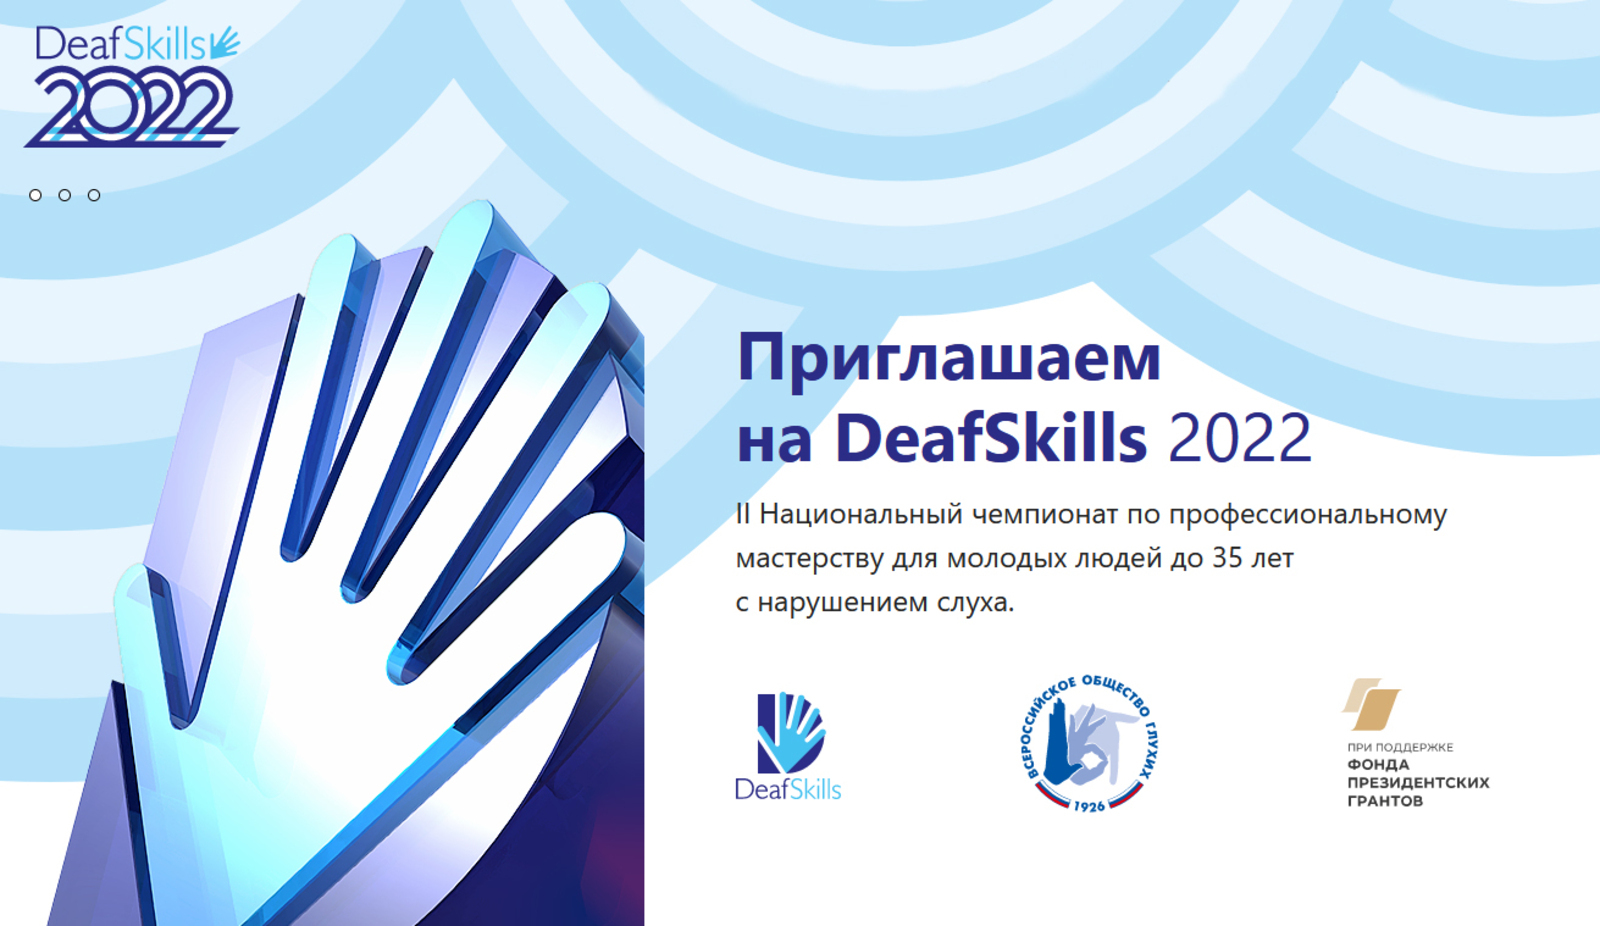 Чемпионат профессионального мастерства среди глухих DeafSkills-2022 пройдет в Уфе